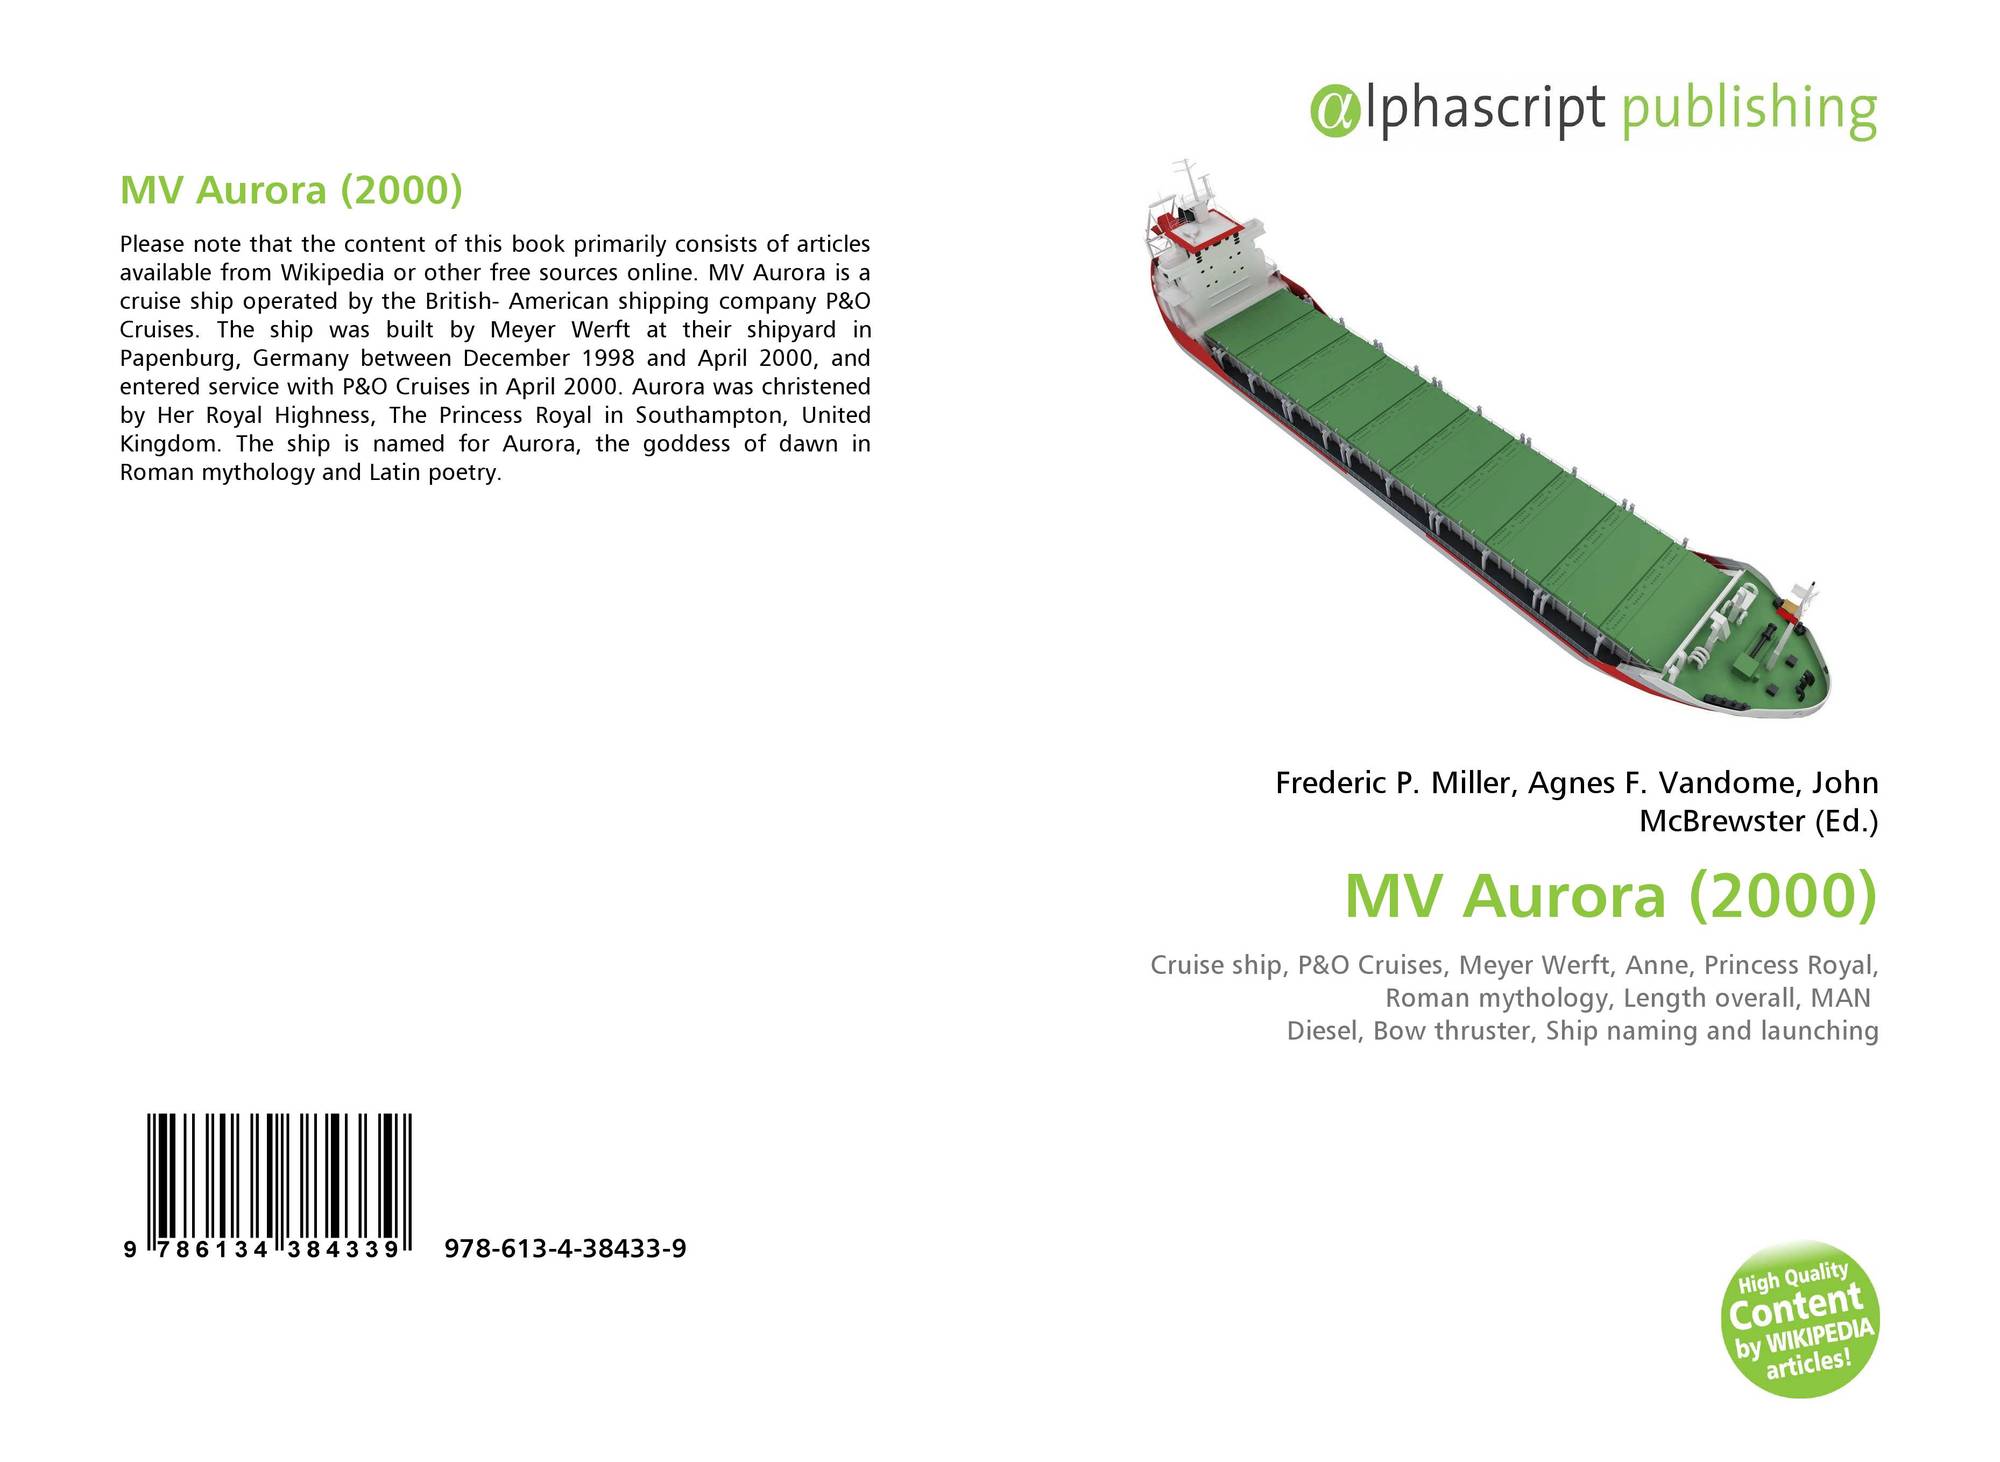 maiden voyage of mv aurora (2000) summary